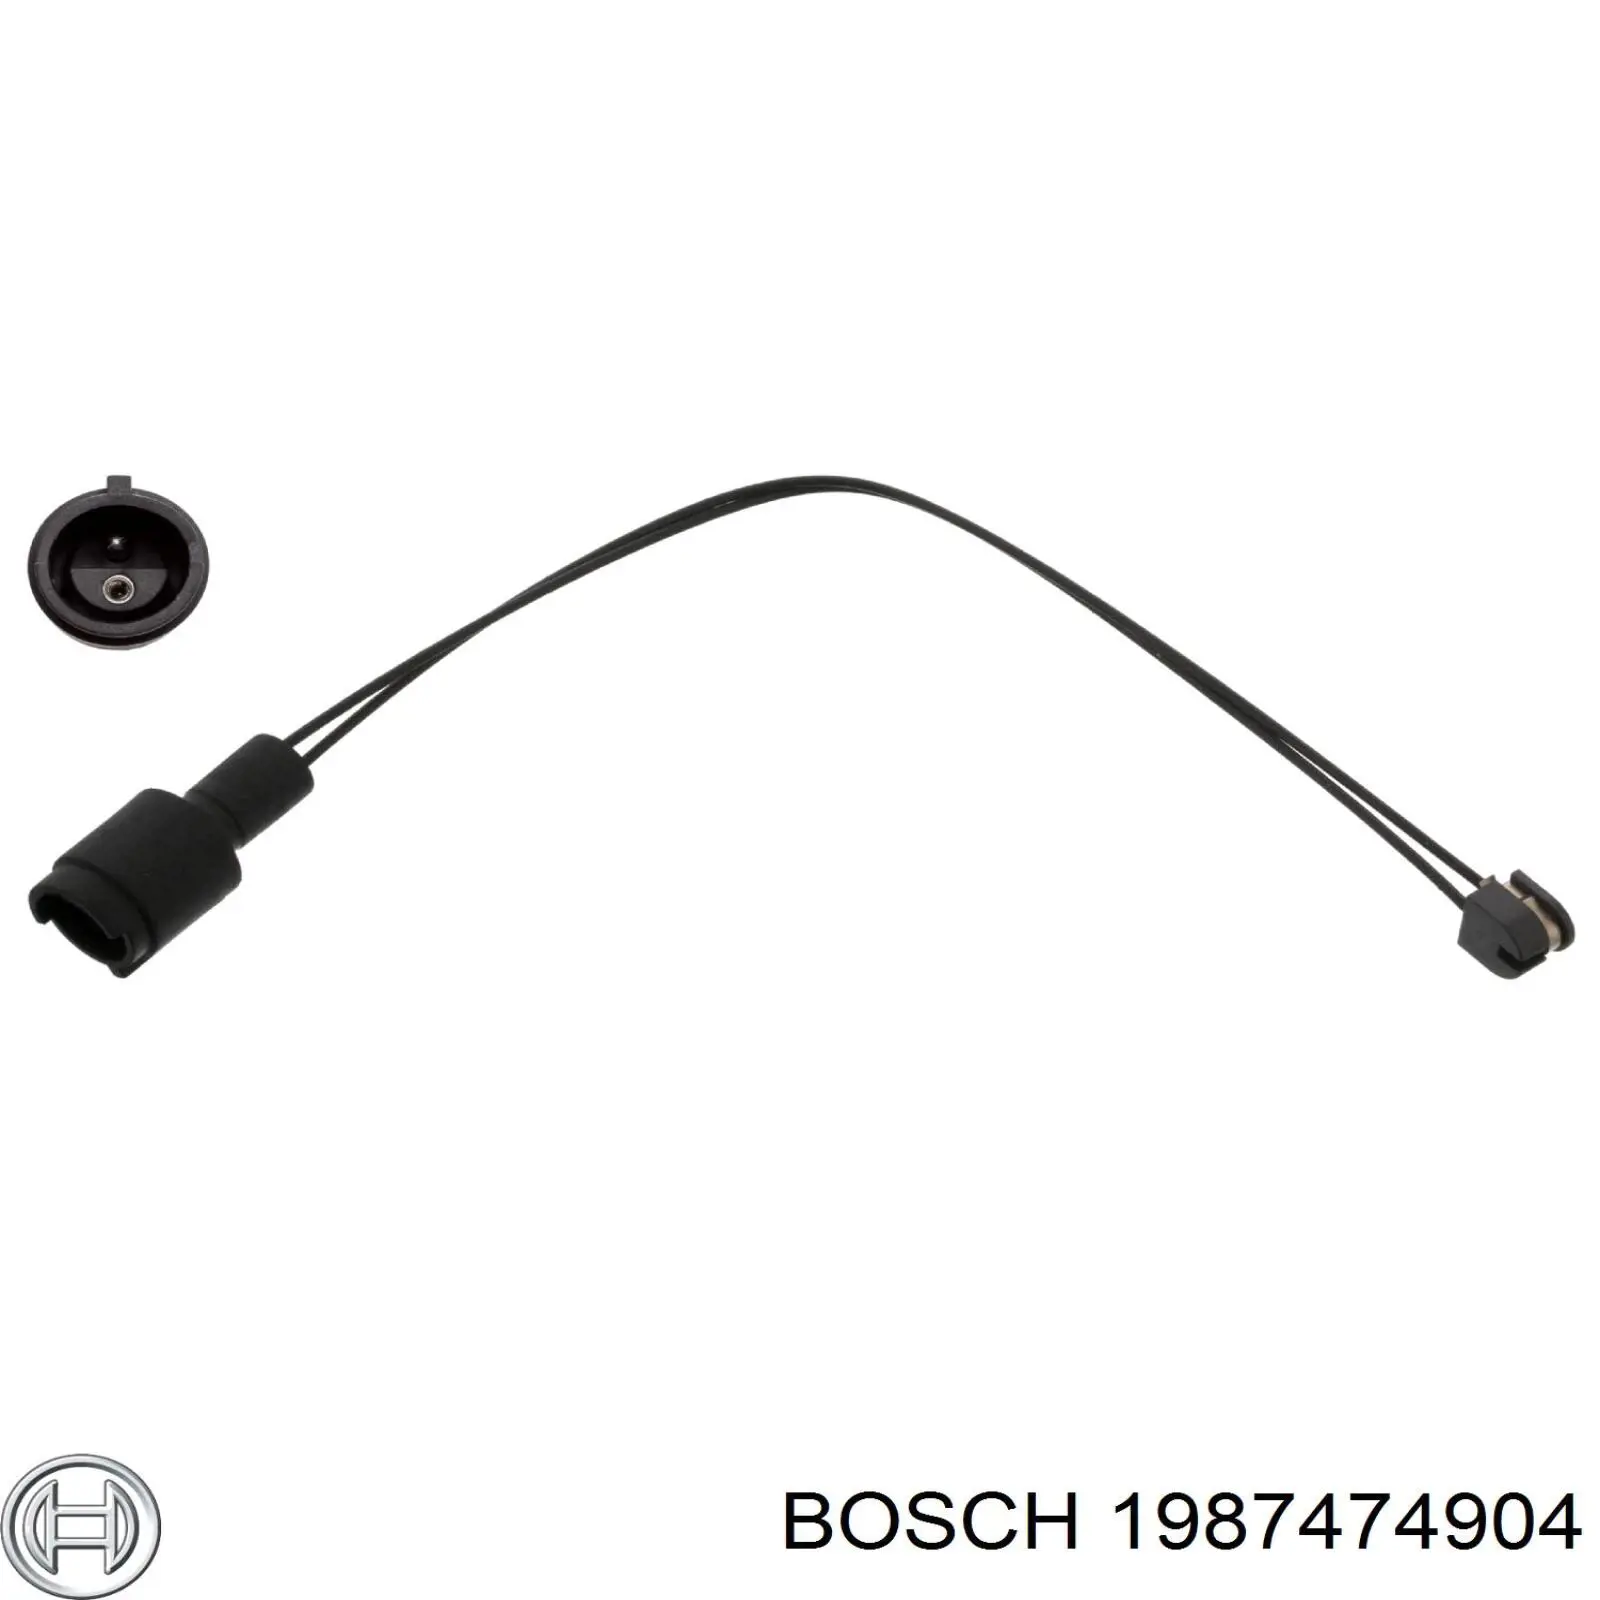 1987474904 Bosch contacto de aviso, desgaste de los frenos